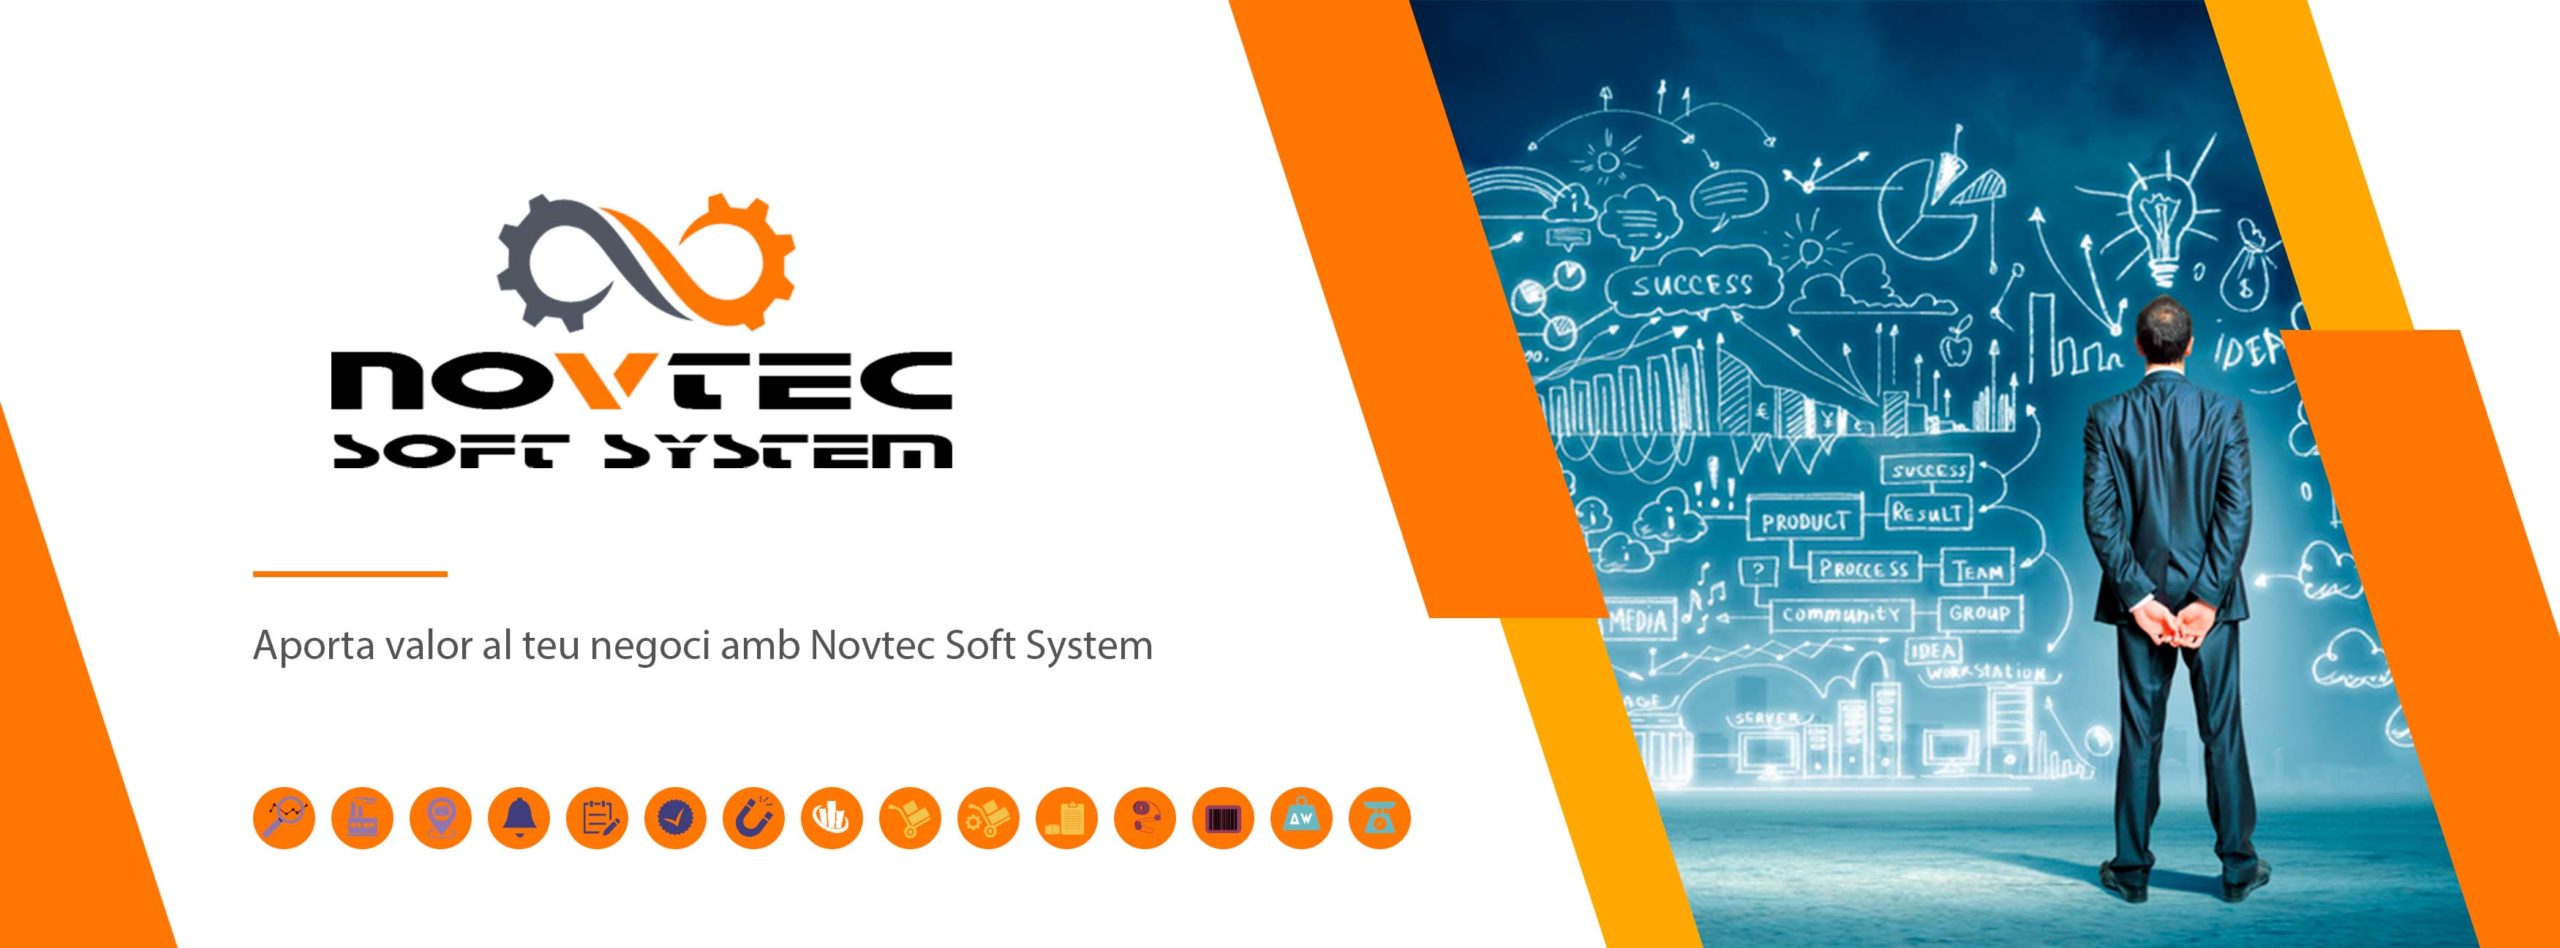 Novtec-soft-system